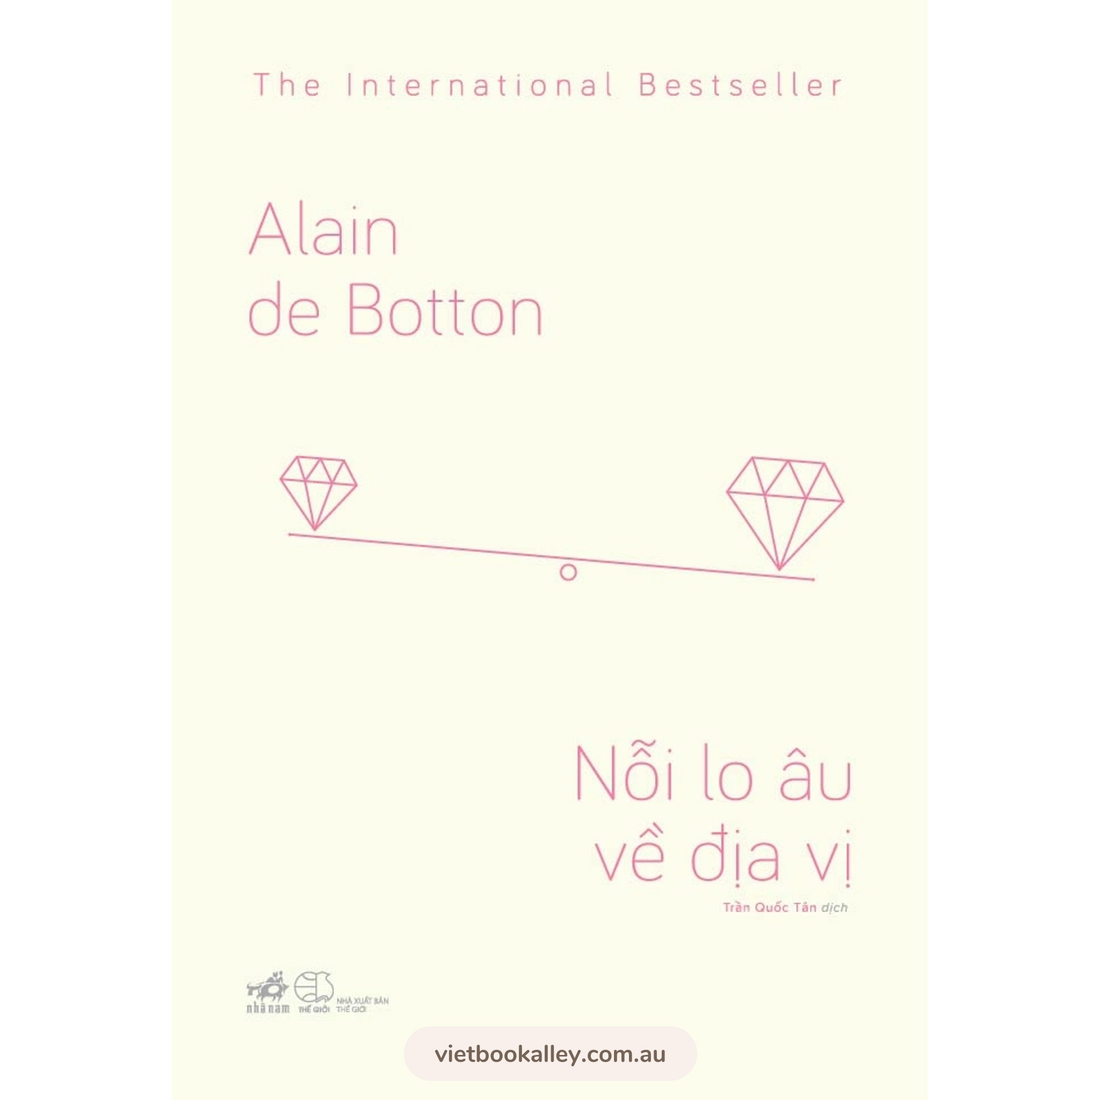 Alain de Botton combo